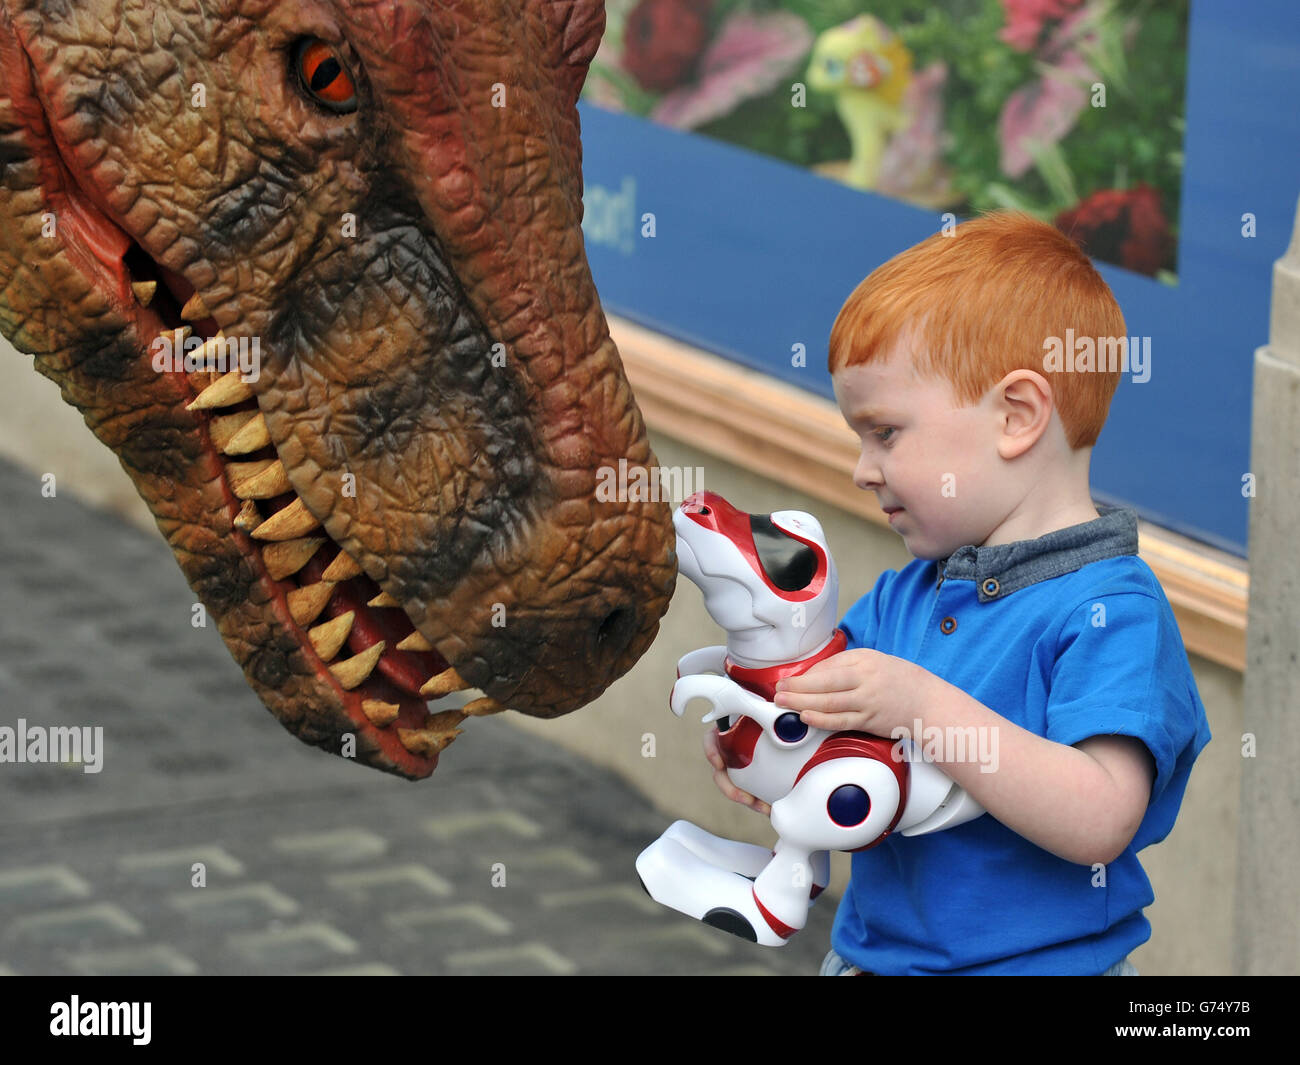 T-rex Dinosaur Runner - 3D model by Chris Morris (@dino-game